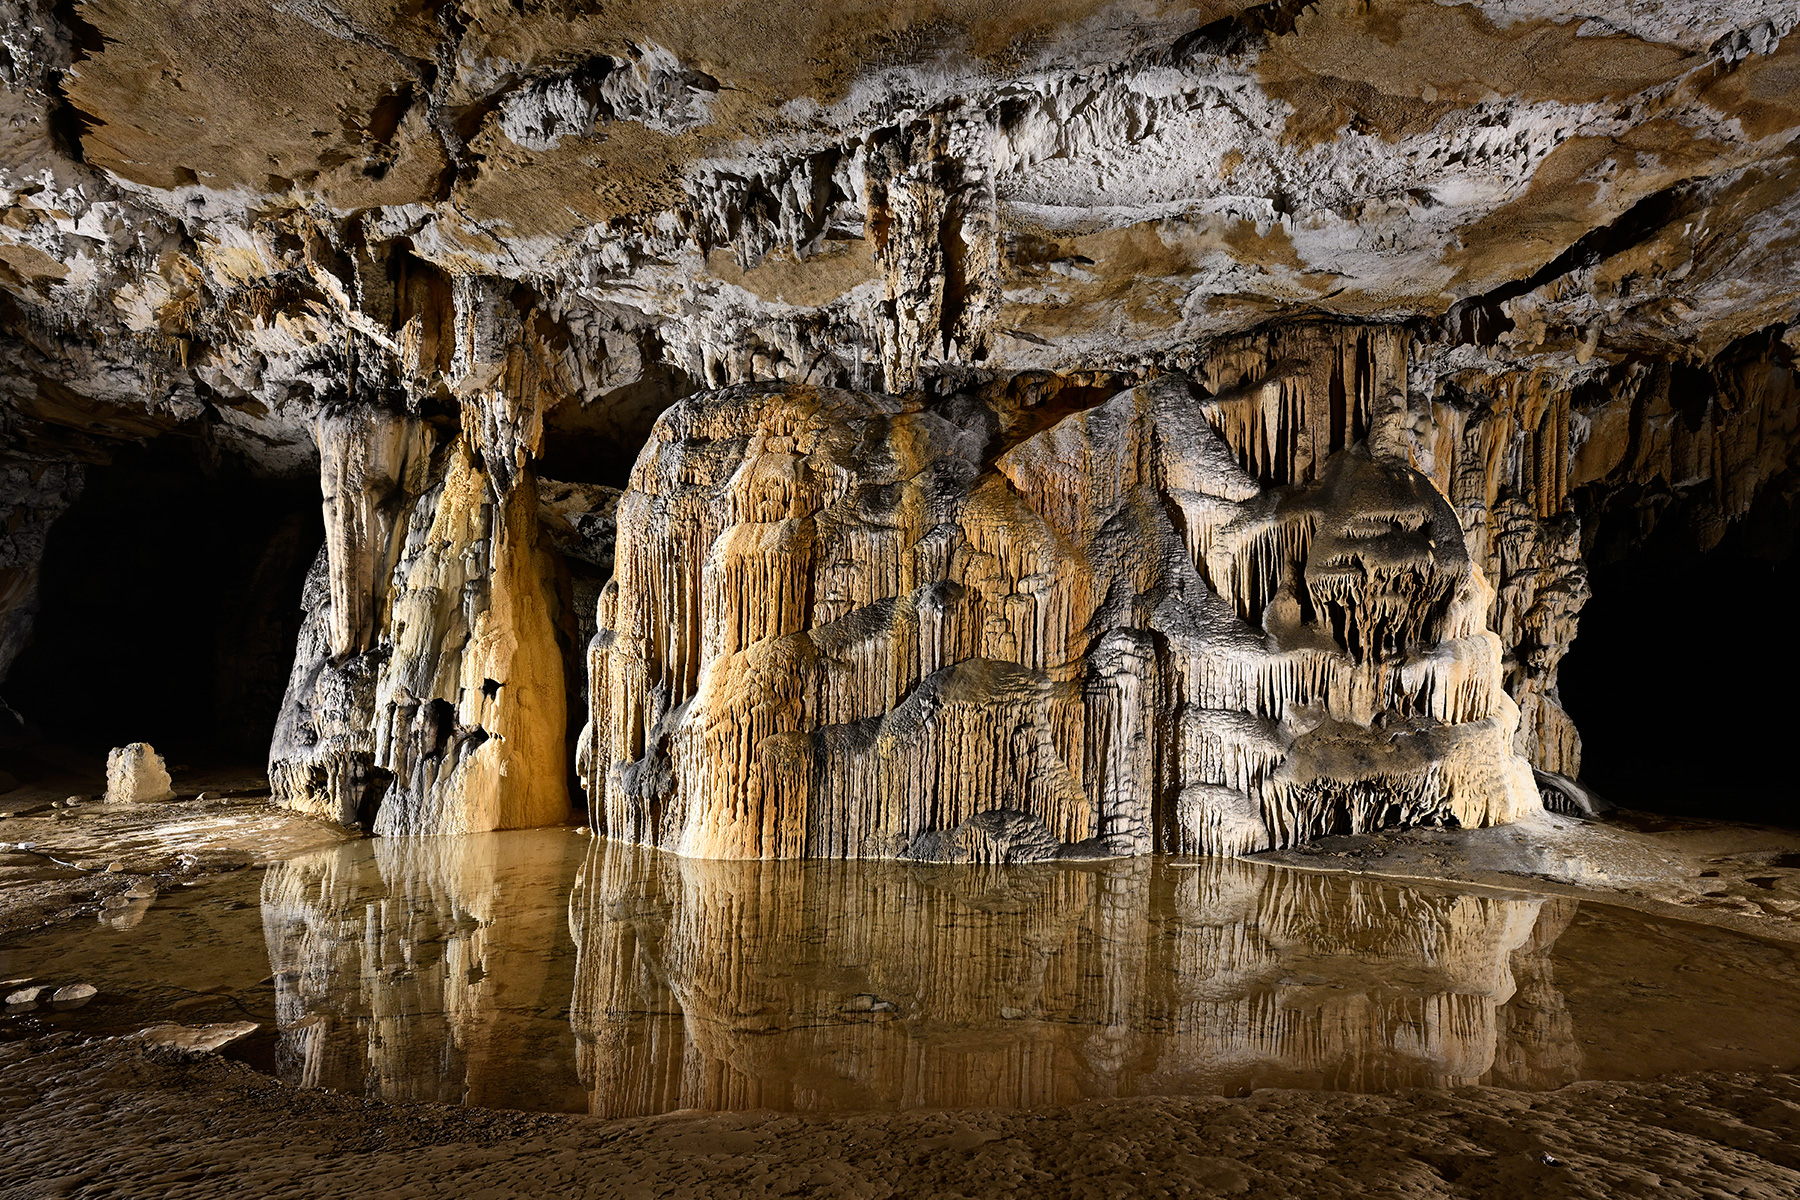 Grotte préhistorique de Bédeilhac (Ariège) - Grand pilier stalagmitique de la salle finale se reflétant dans une vasque